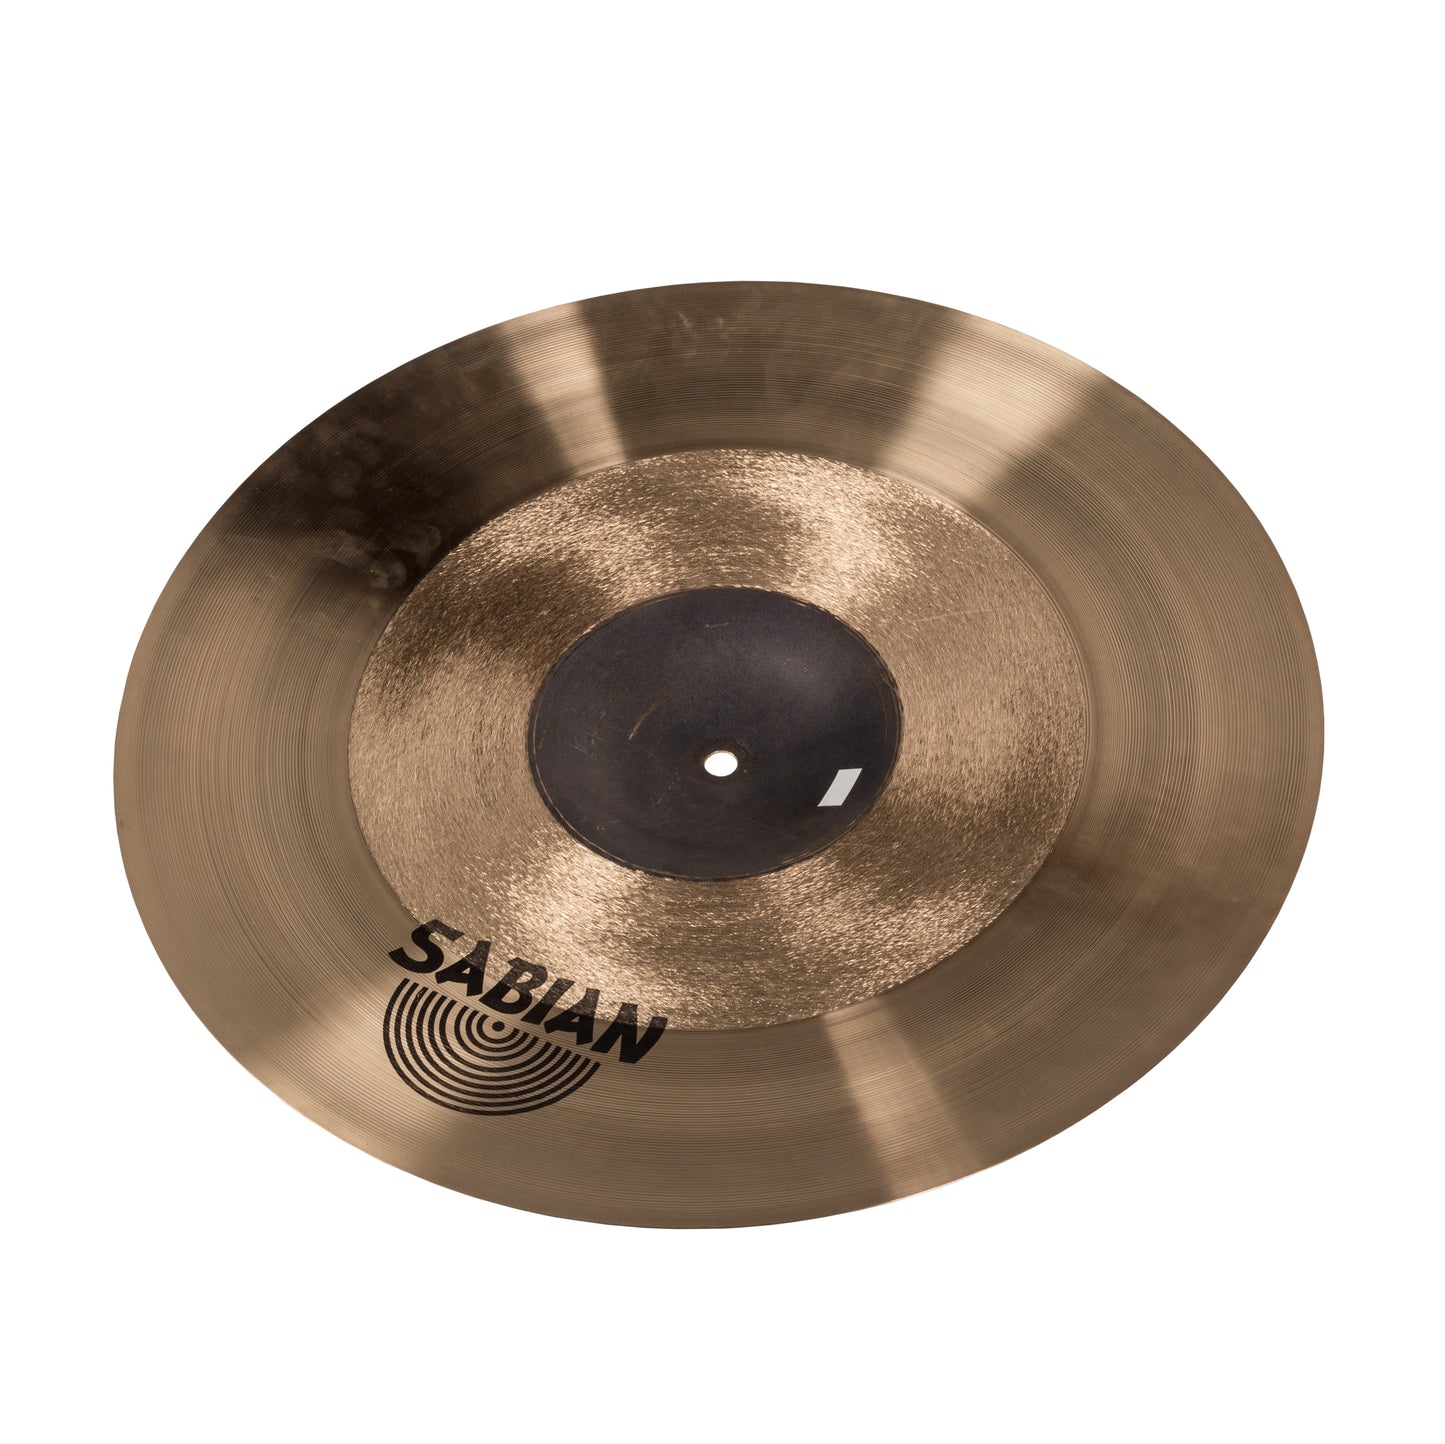 Sabian 18” AAX Frequency Crash Cymbal